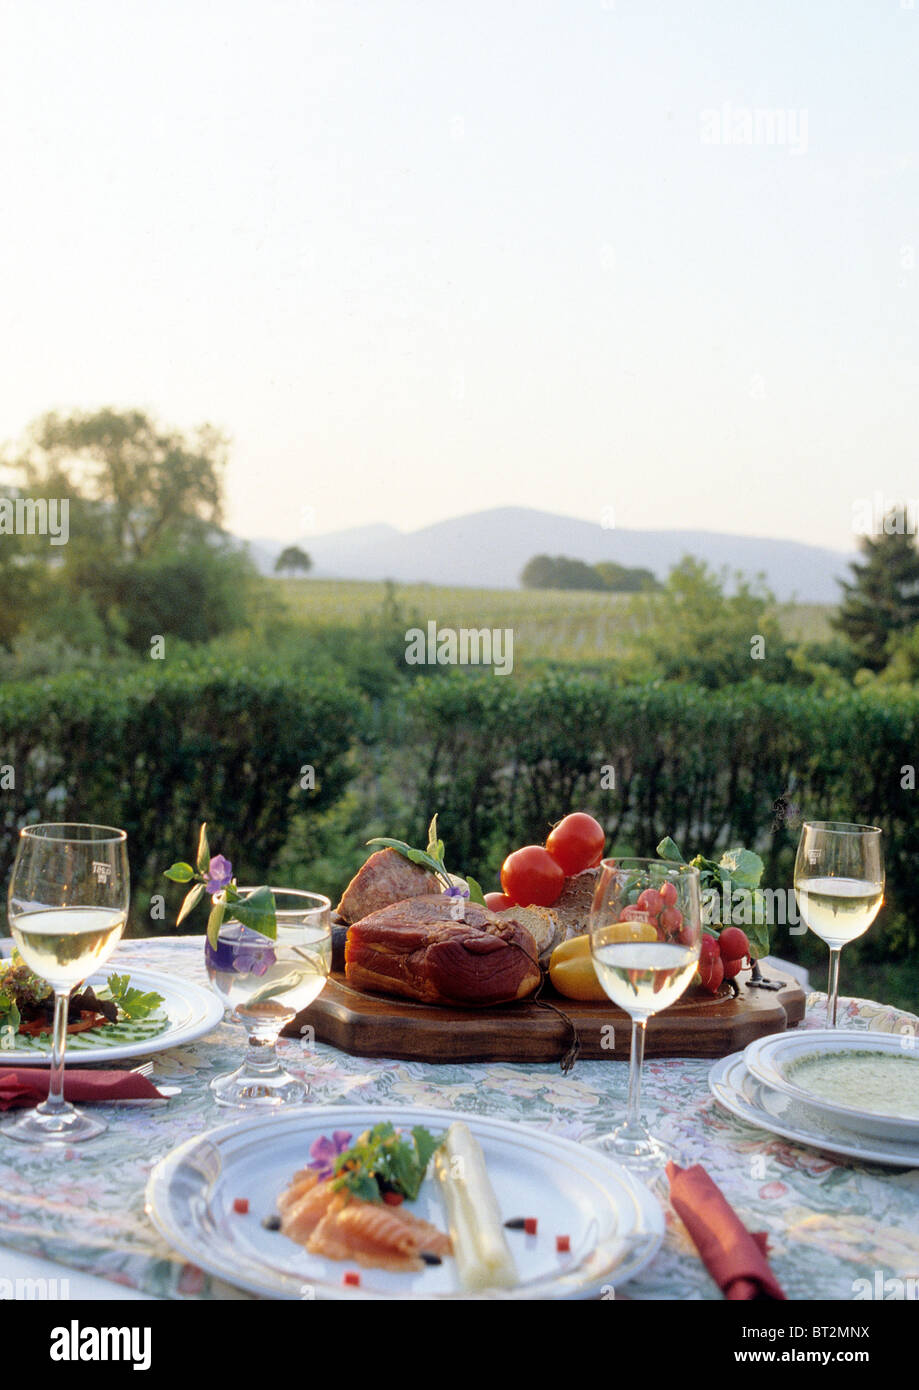 Ben tavola apparecchiata con bicchieri di vino bianco e le piastre con i  prodotti alimentari Foto stock - Alamy